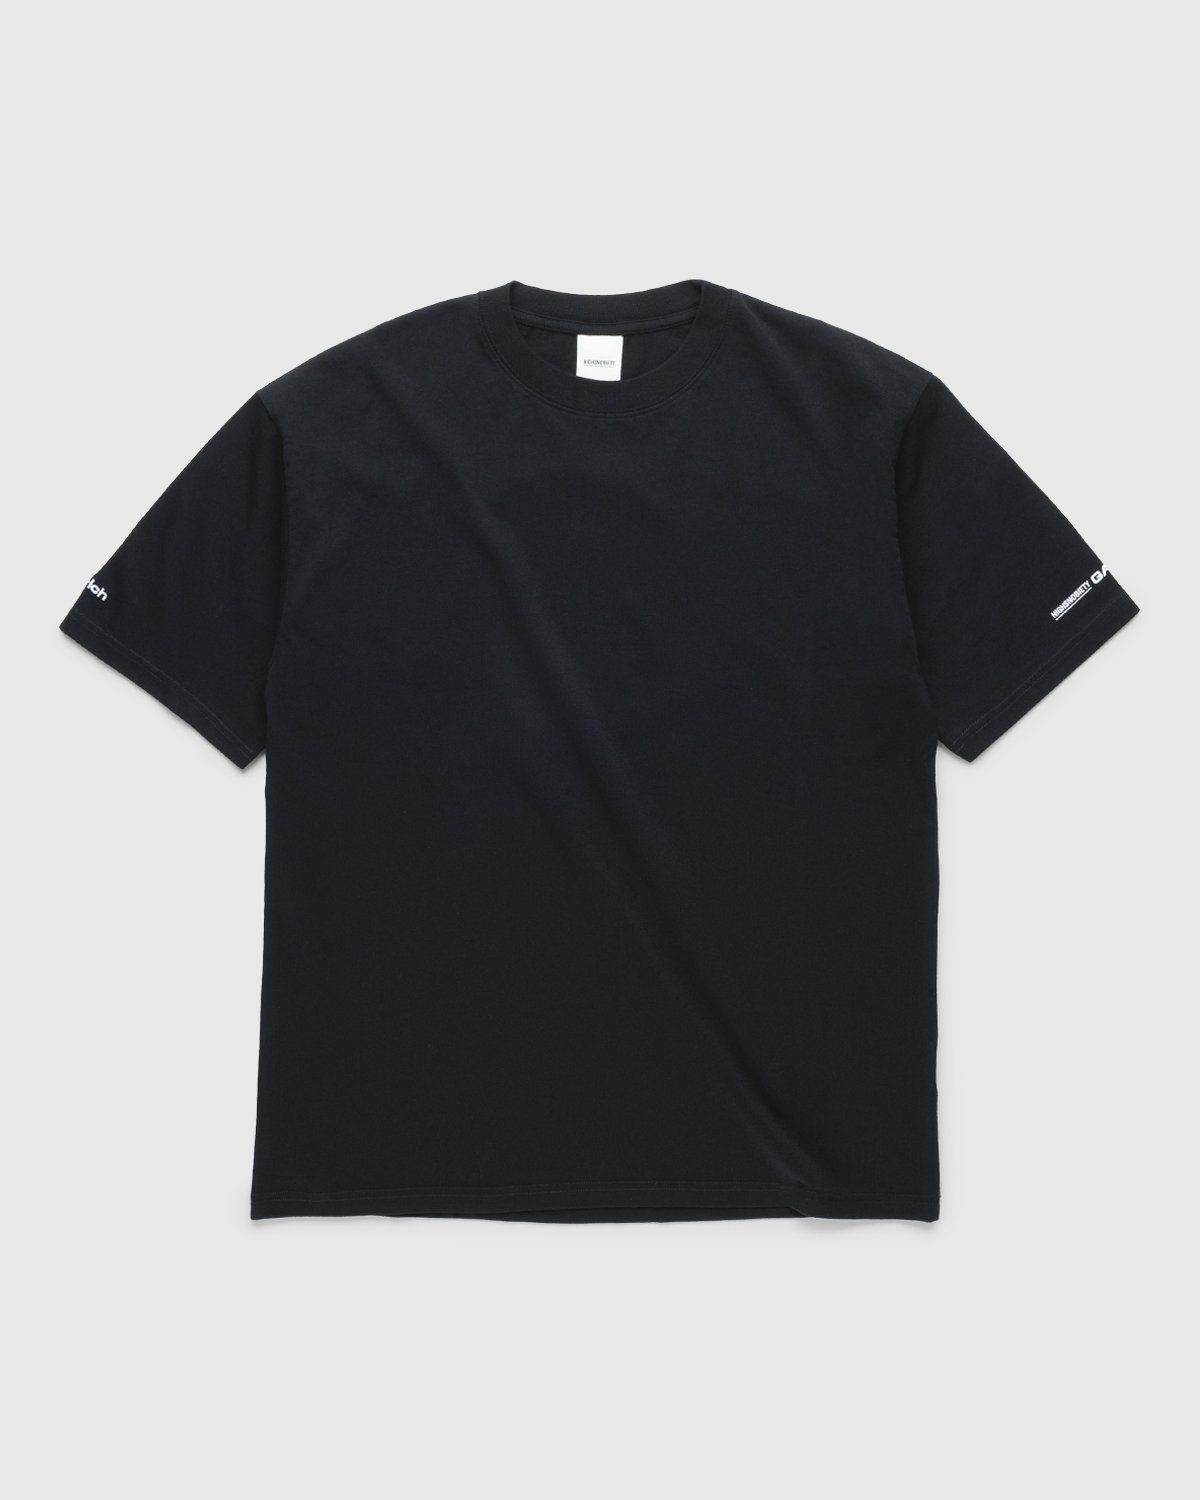 Highsnobiety – GATEZERO Crest T-Shirt Black | Highsnobiety Shop